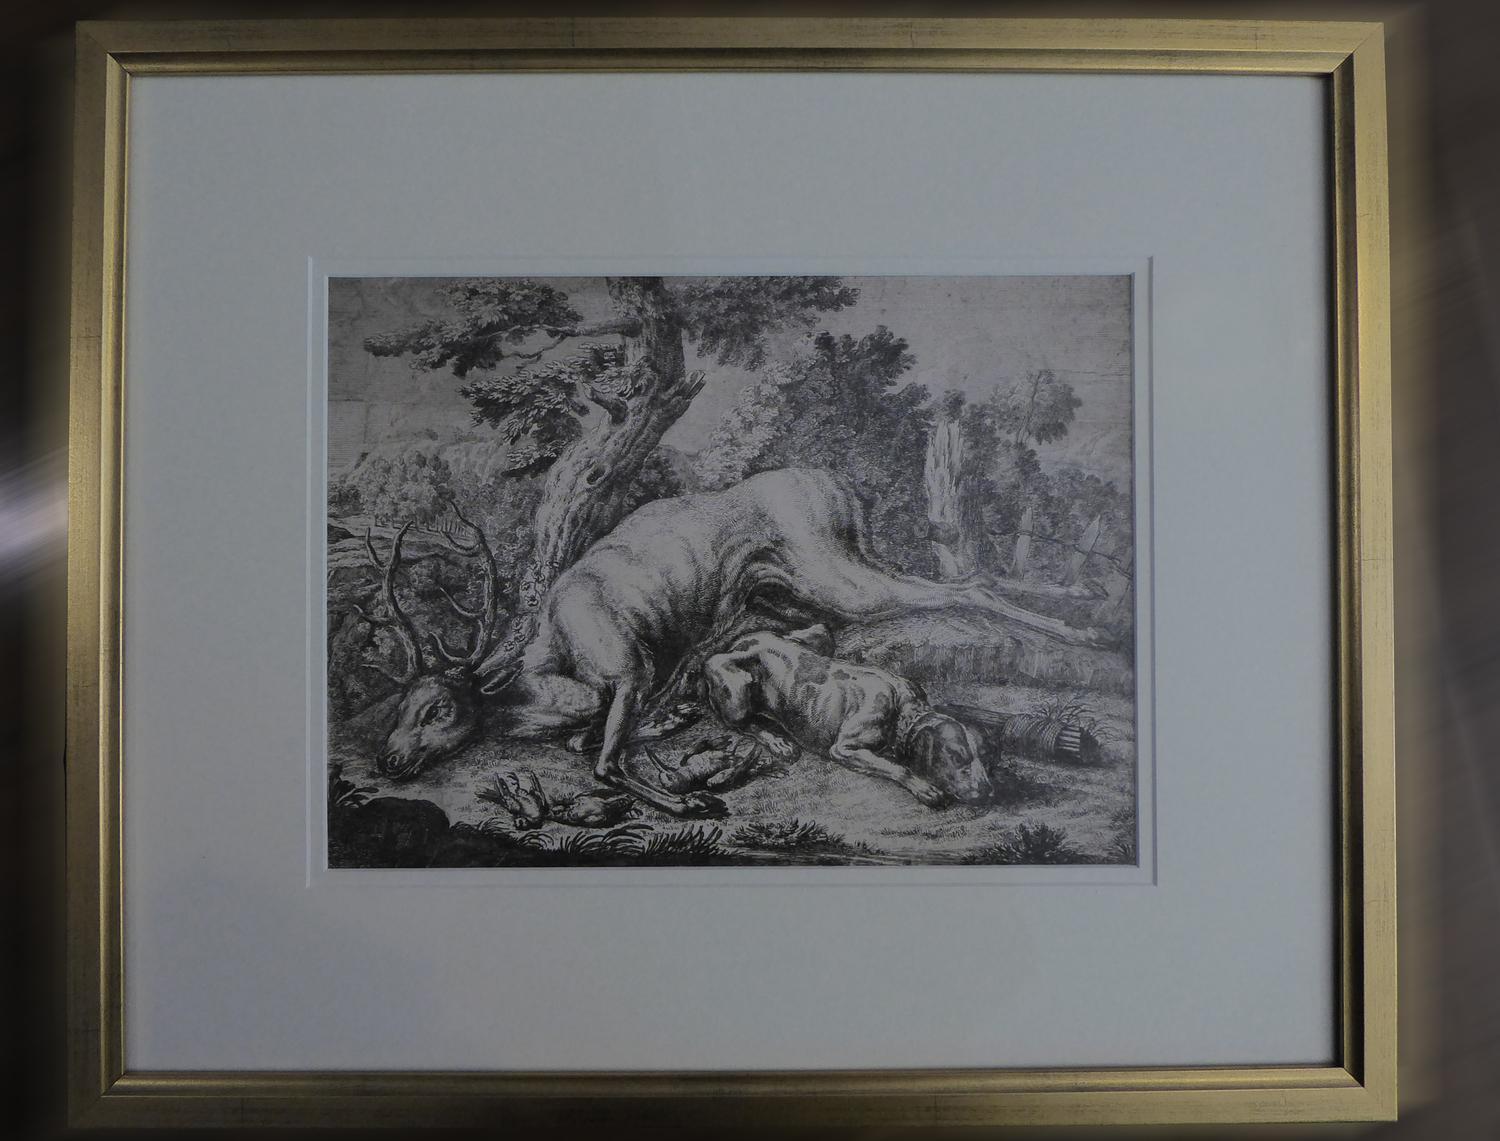 Belle gravure du XVIIIe siècle représentant un cerf, après la chasse, avec un magnifique chien au repos, dans une scène champêtre, magnifiquement représentée.